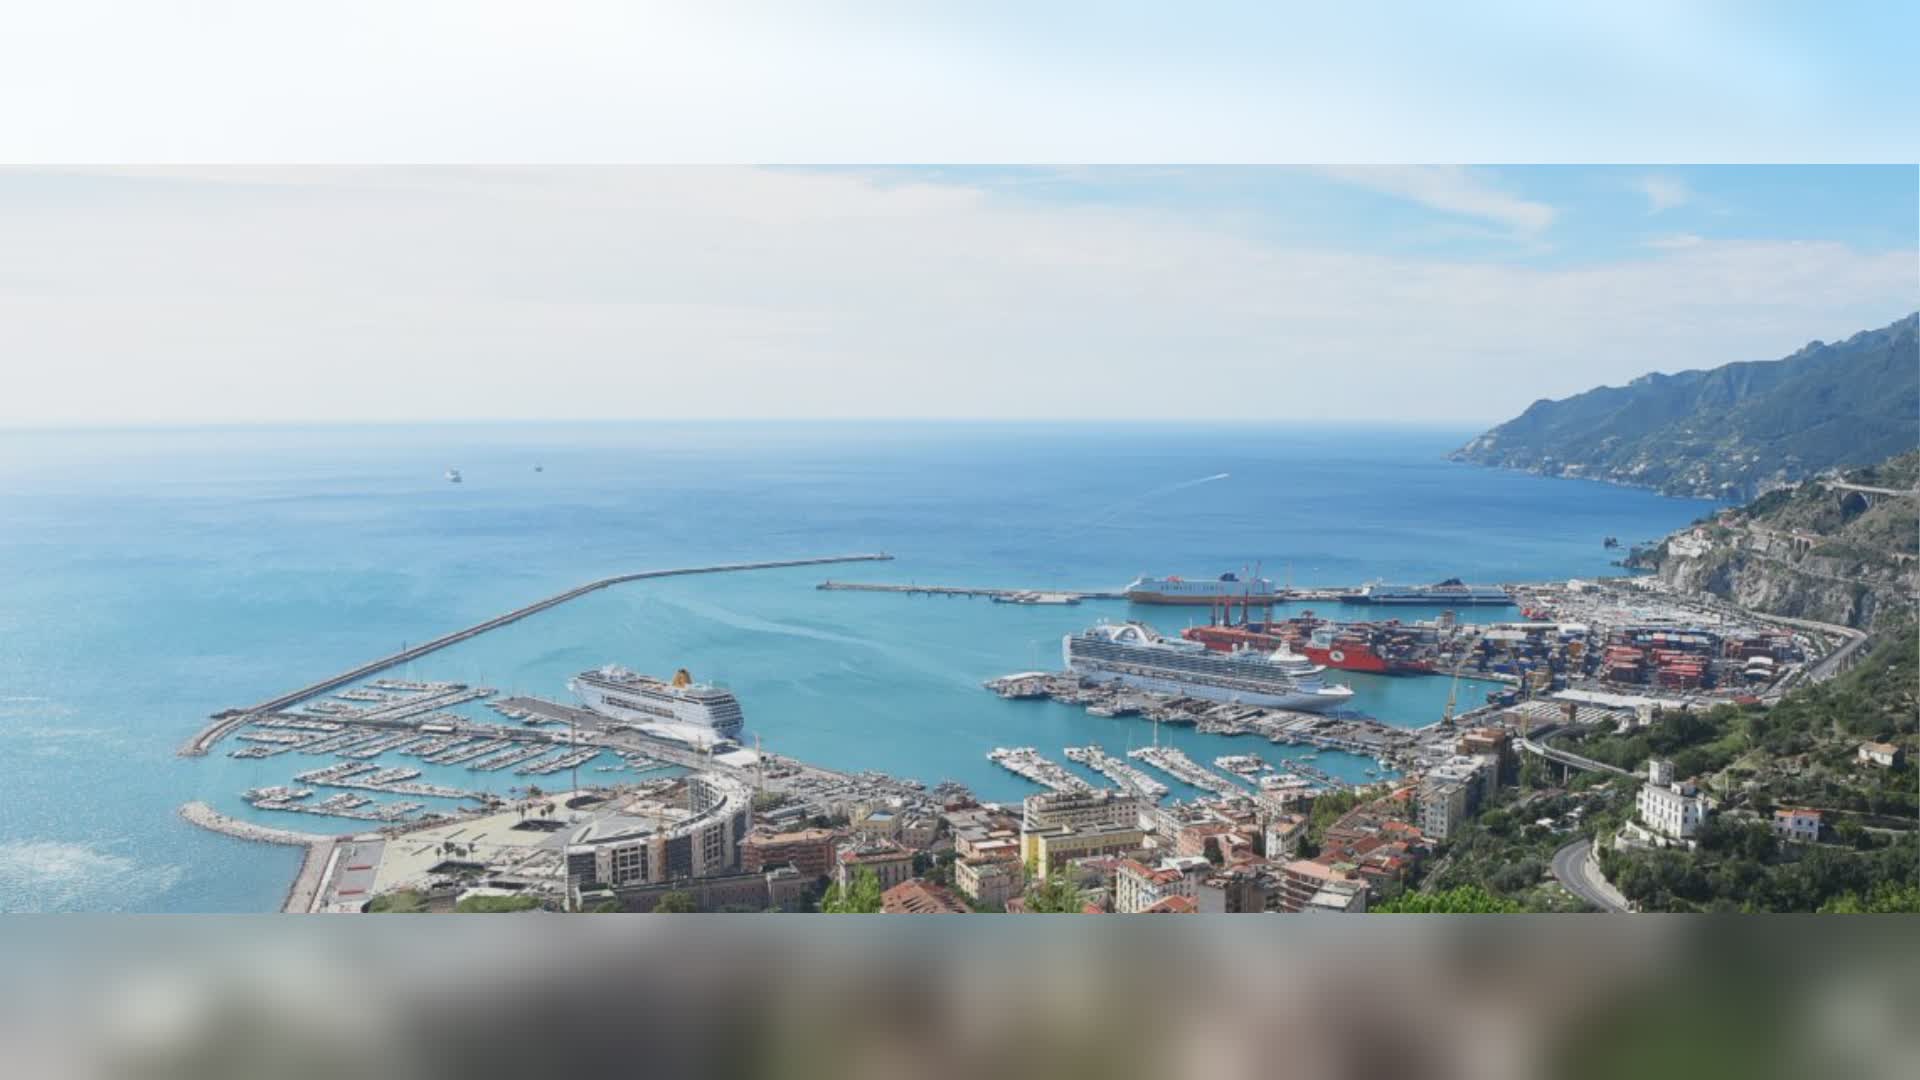 Porto di Salerno: ripristinata l'operatività di Molo Manfredi dopo i recenti dissesti